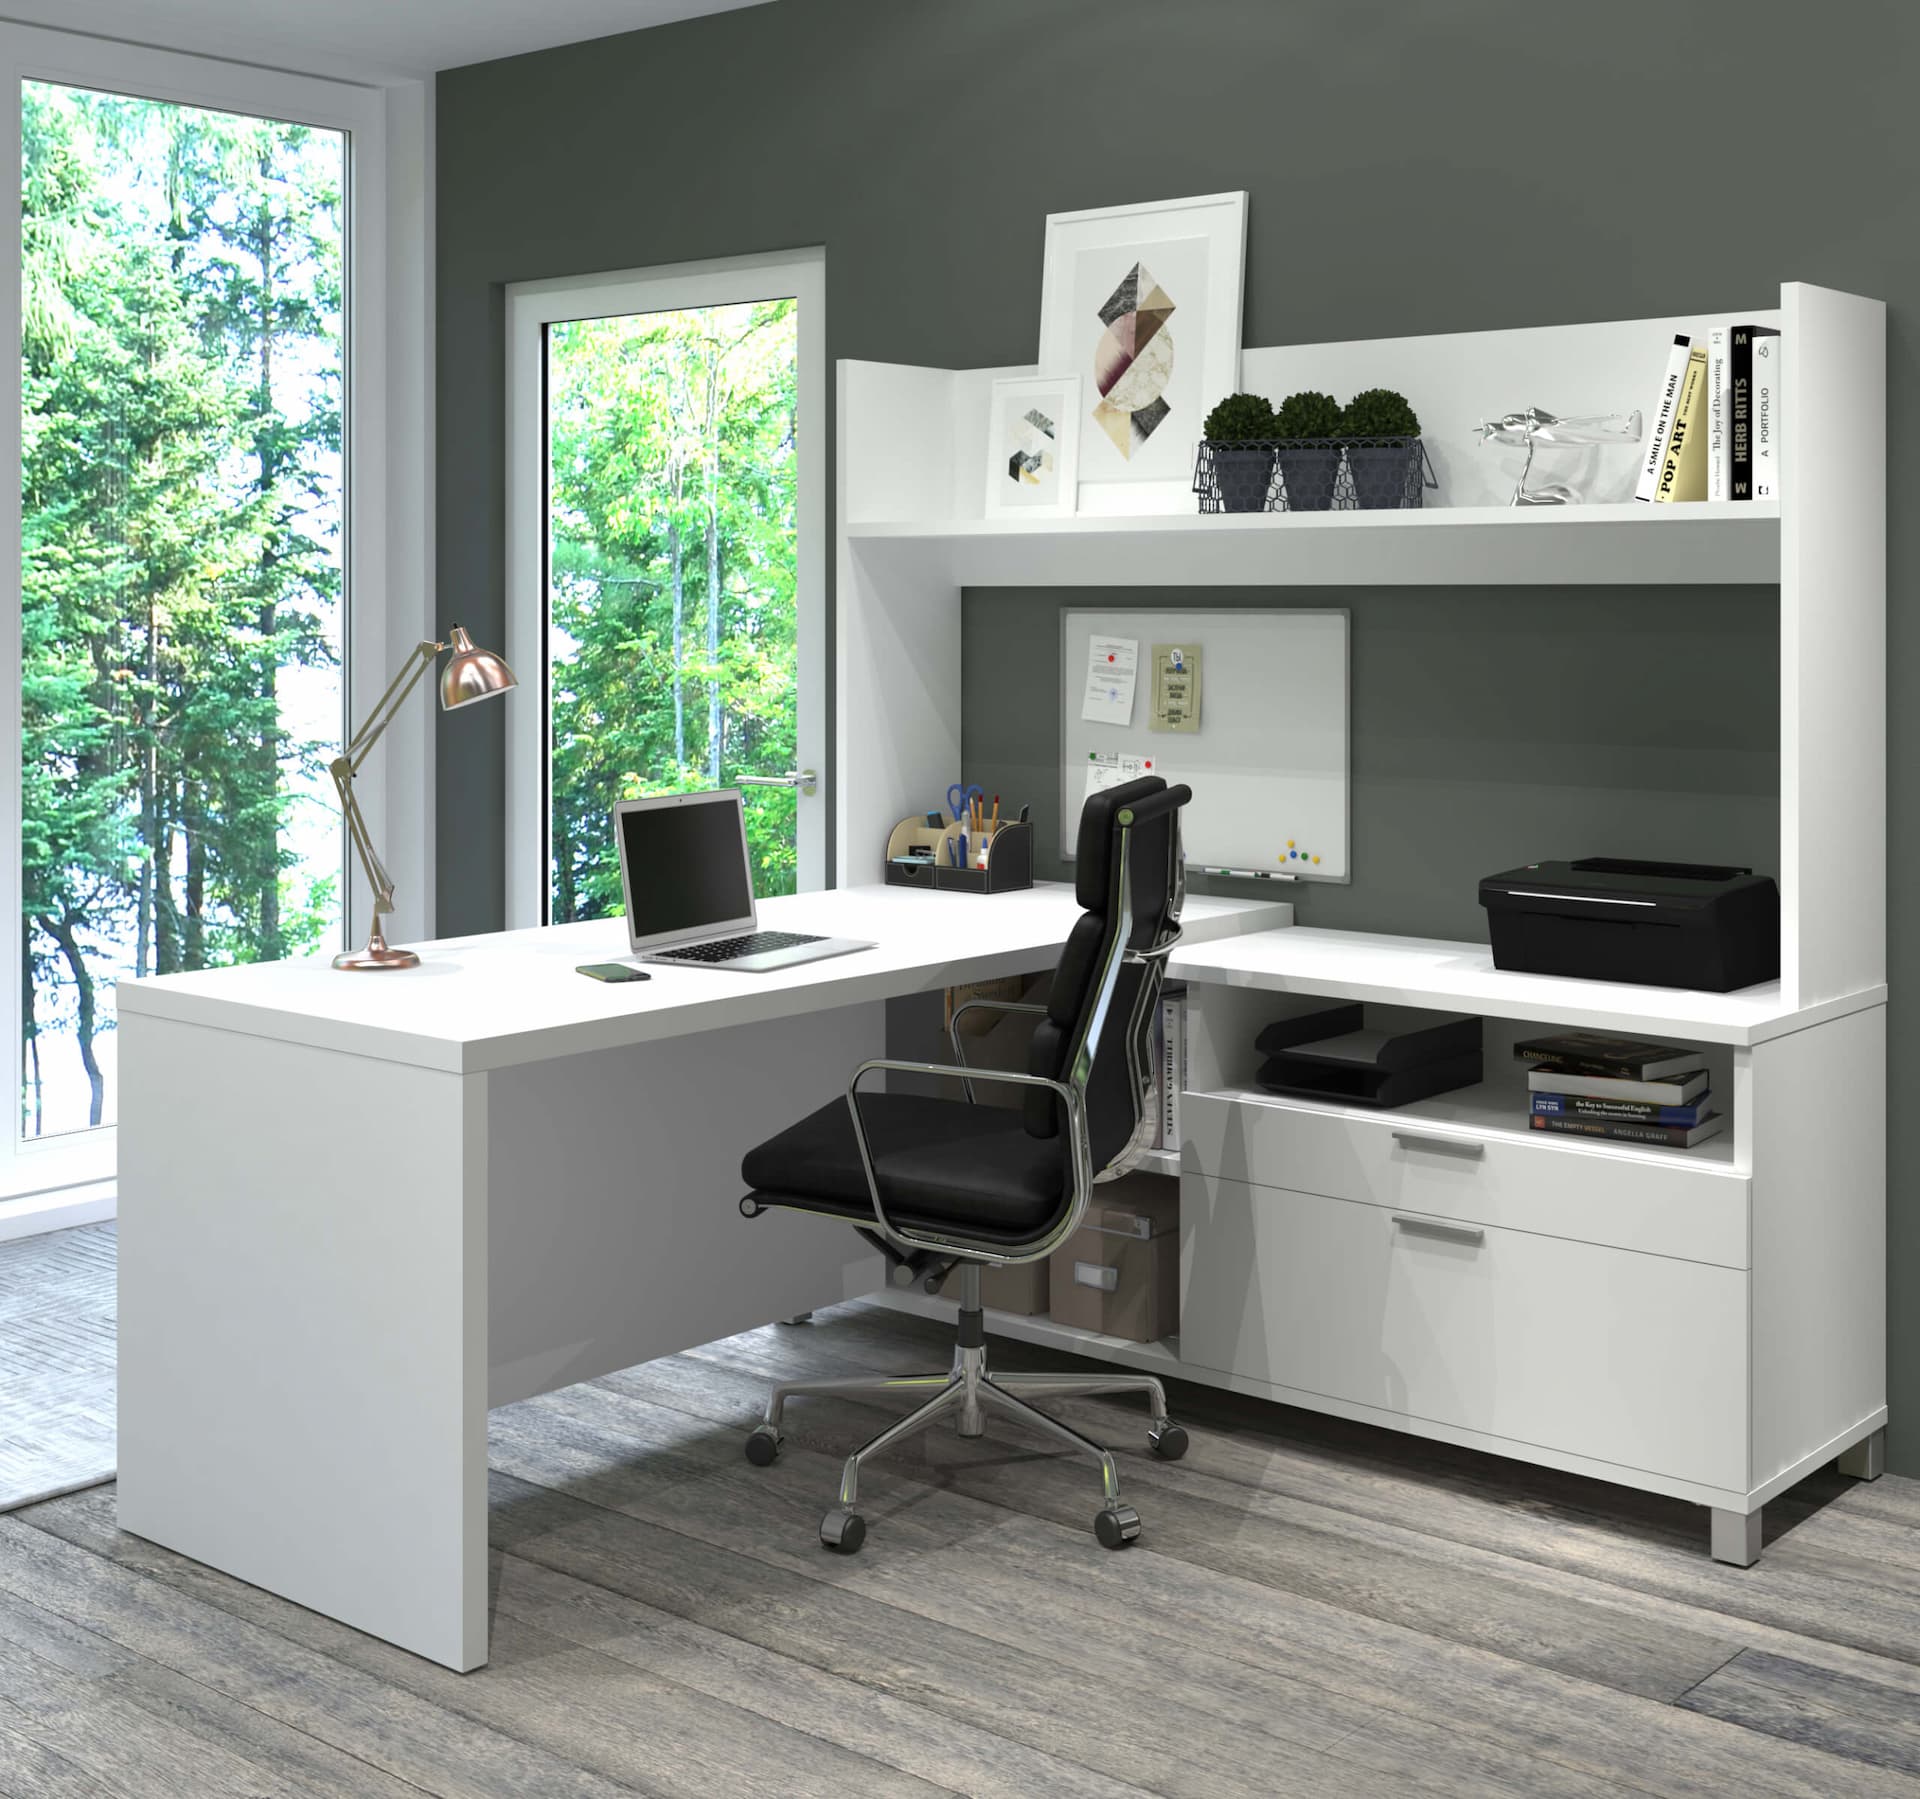 4 façons de créer un espace de travail productif avec du mobilier